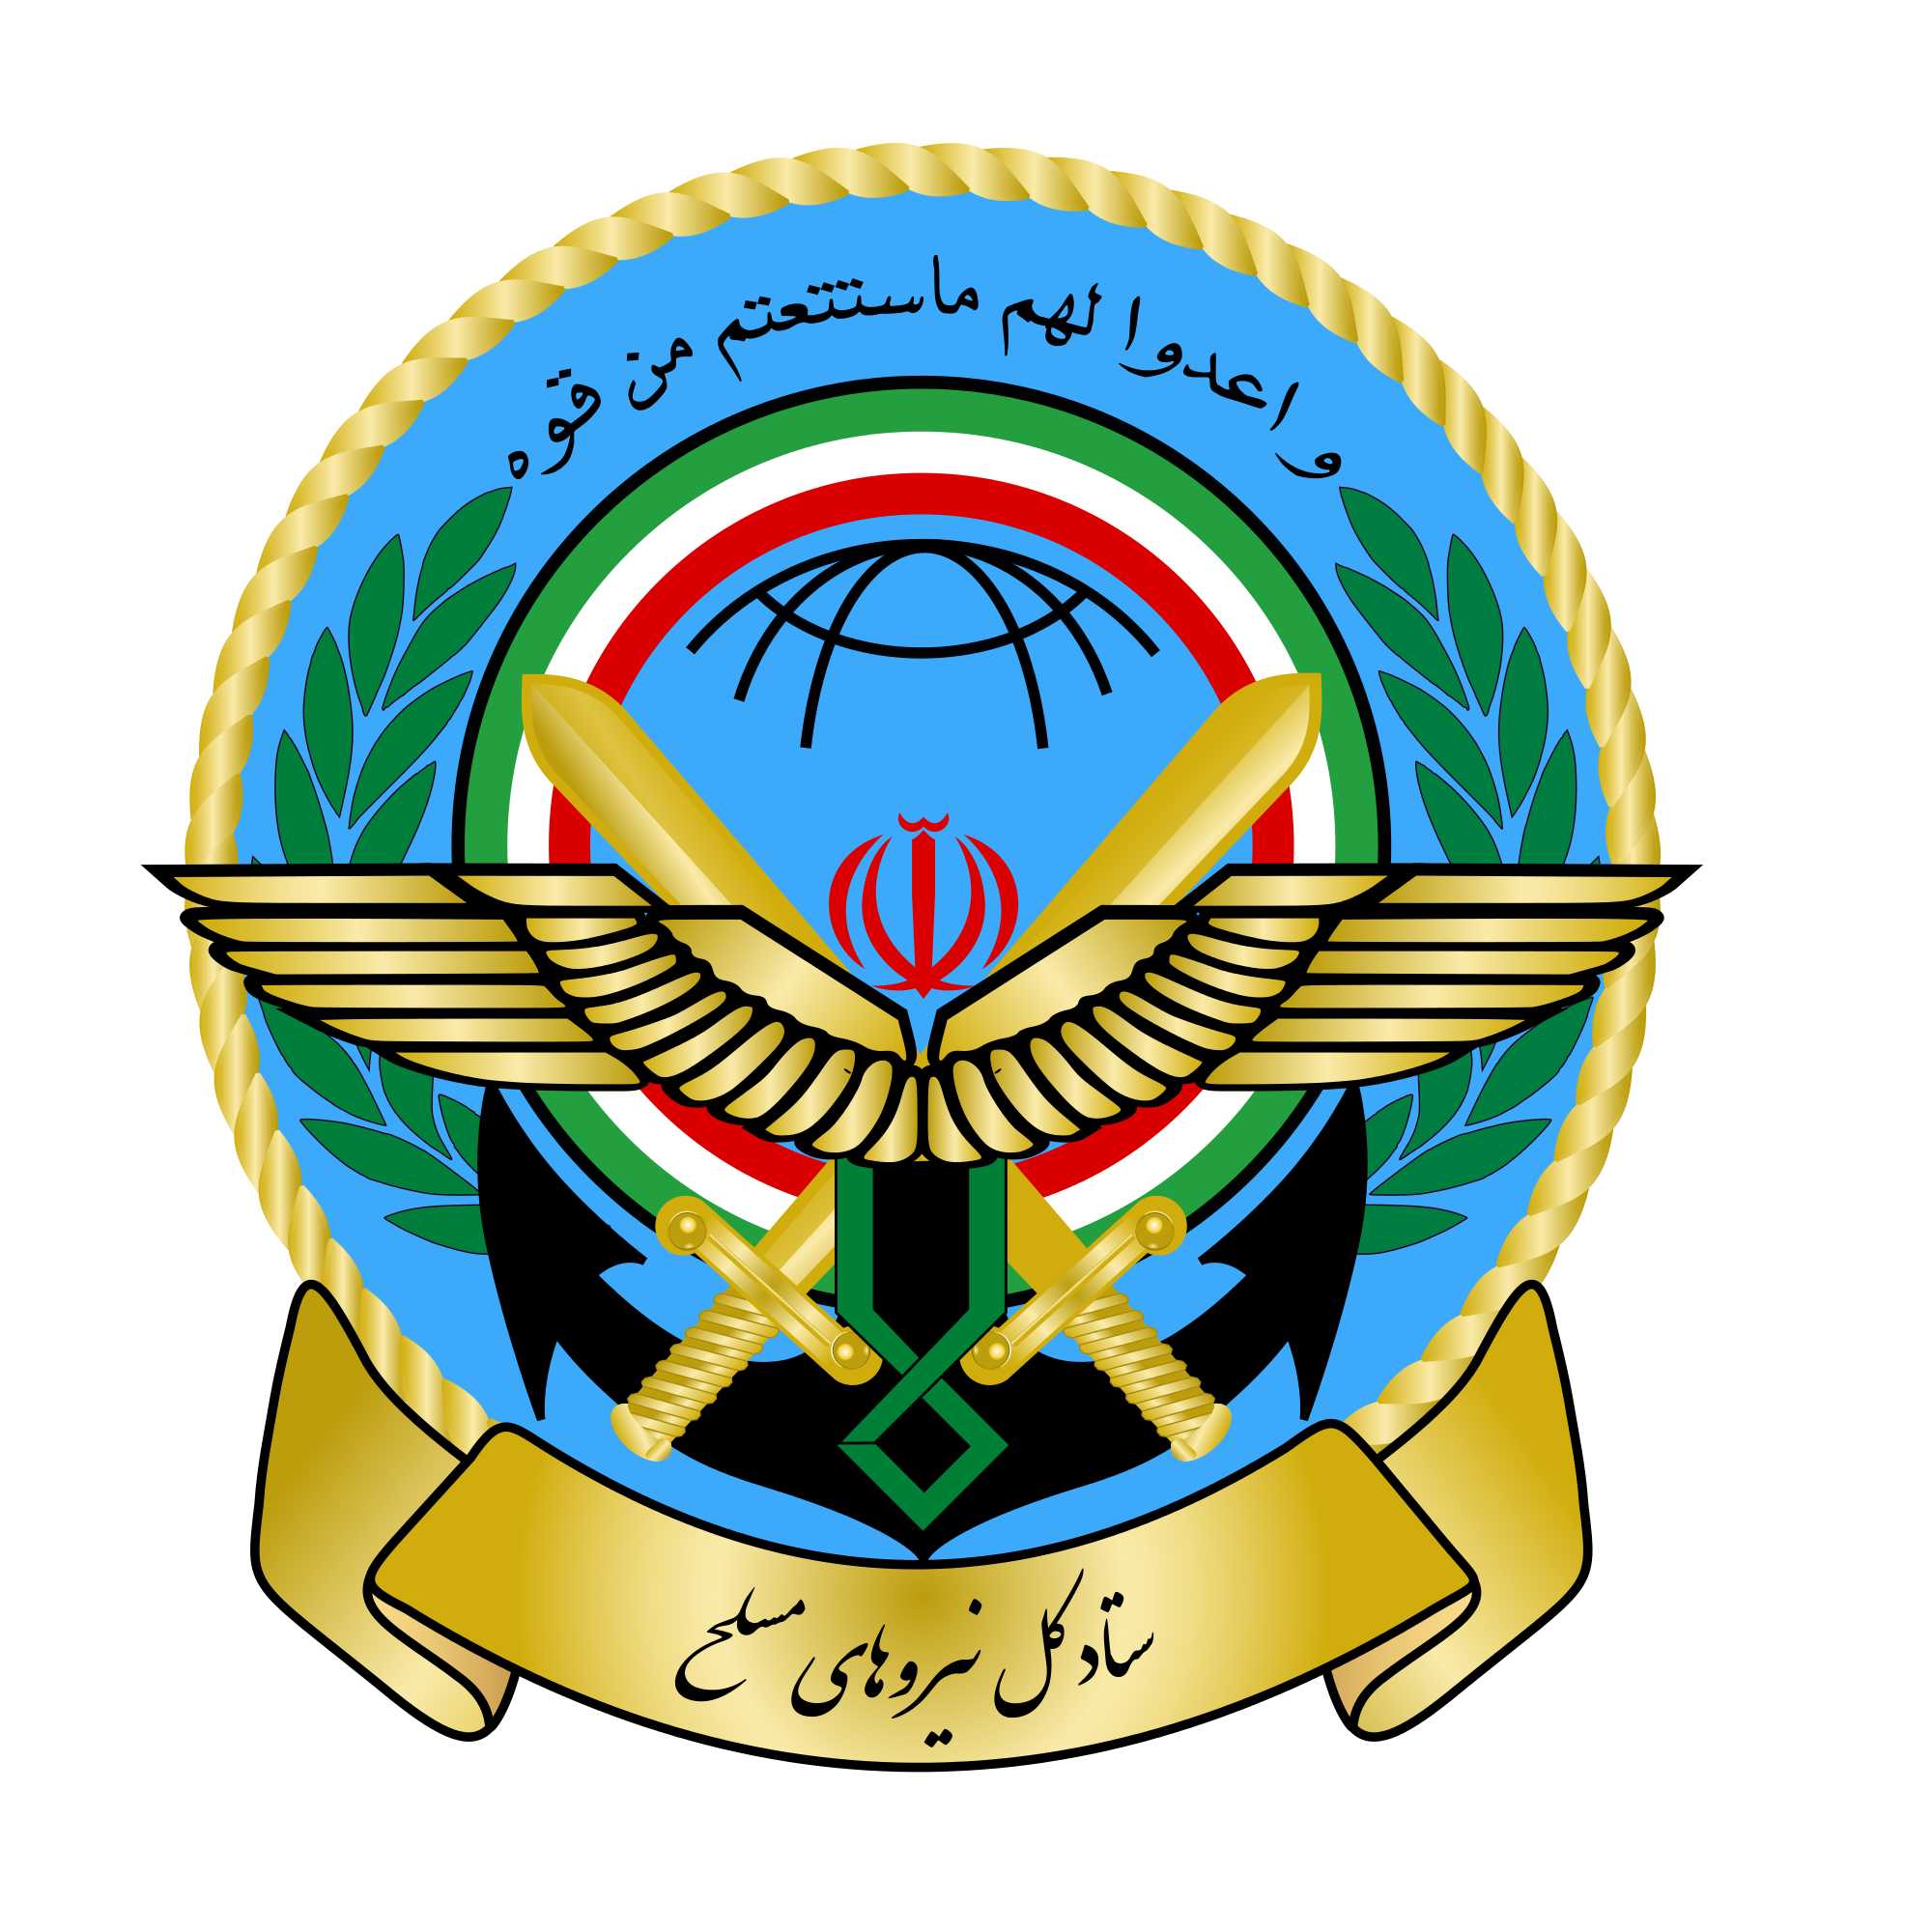 بیانیه ستاد کل نیروهای مسلح به مناسبت سالروز رحلت امام خمینی (ره)